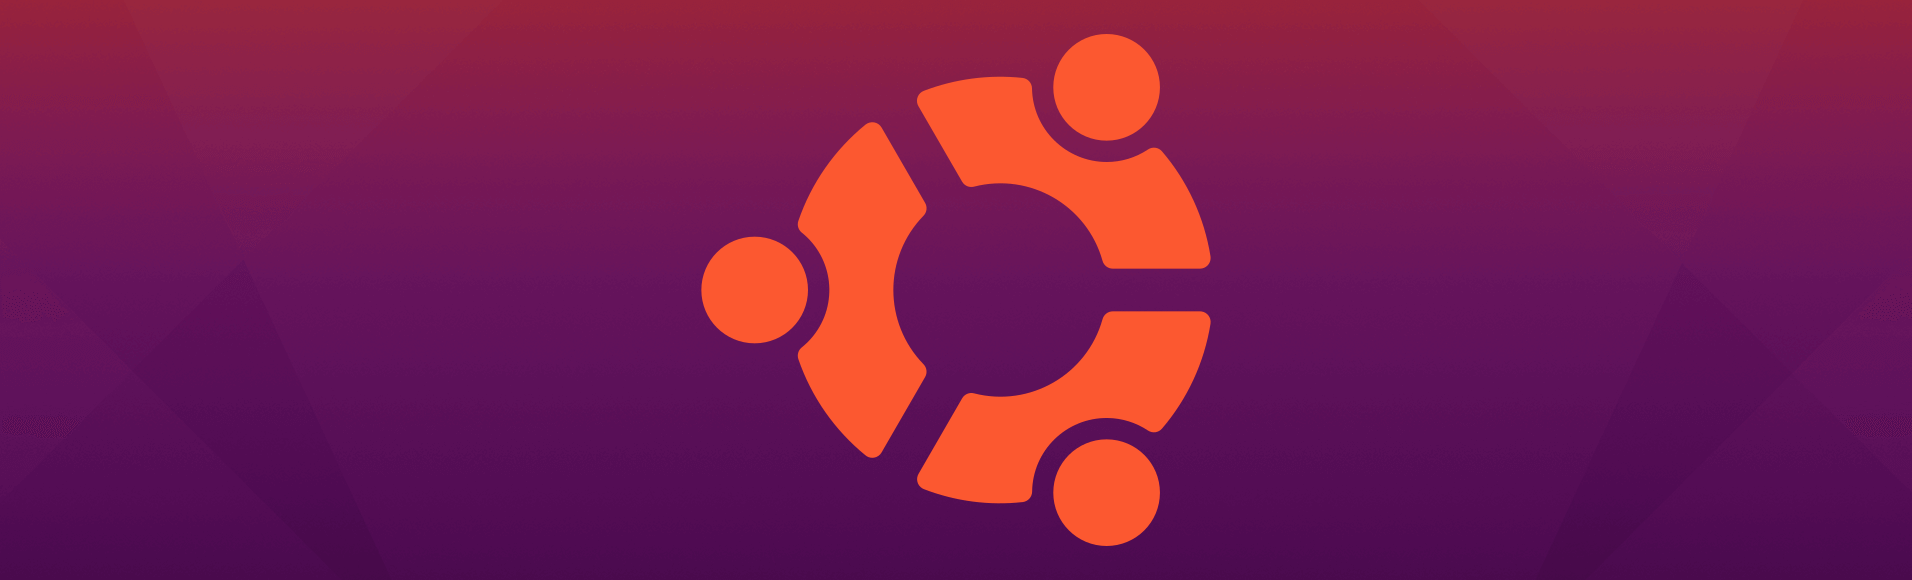 Paano mag-install ng vfxAlert sa Ubuntu